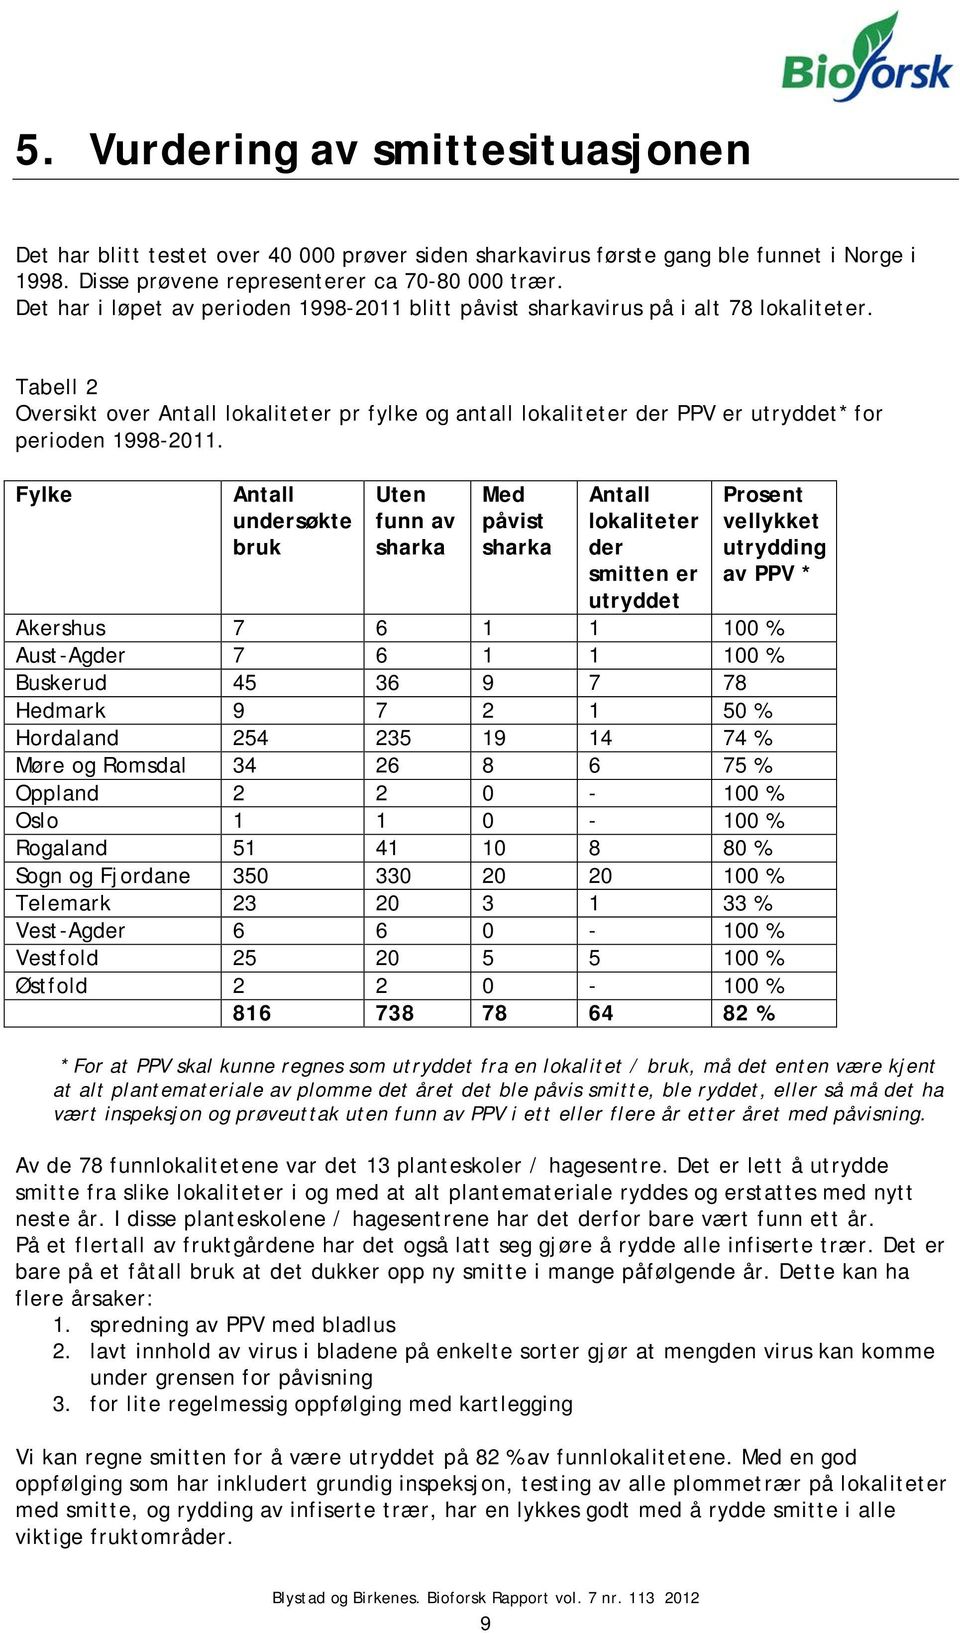 Tabell 2 Oversikt over Antall lokaliteter pr fylke og antall lokaliteter der PPV er utryddet* for perioden 1998-2011.